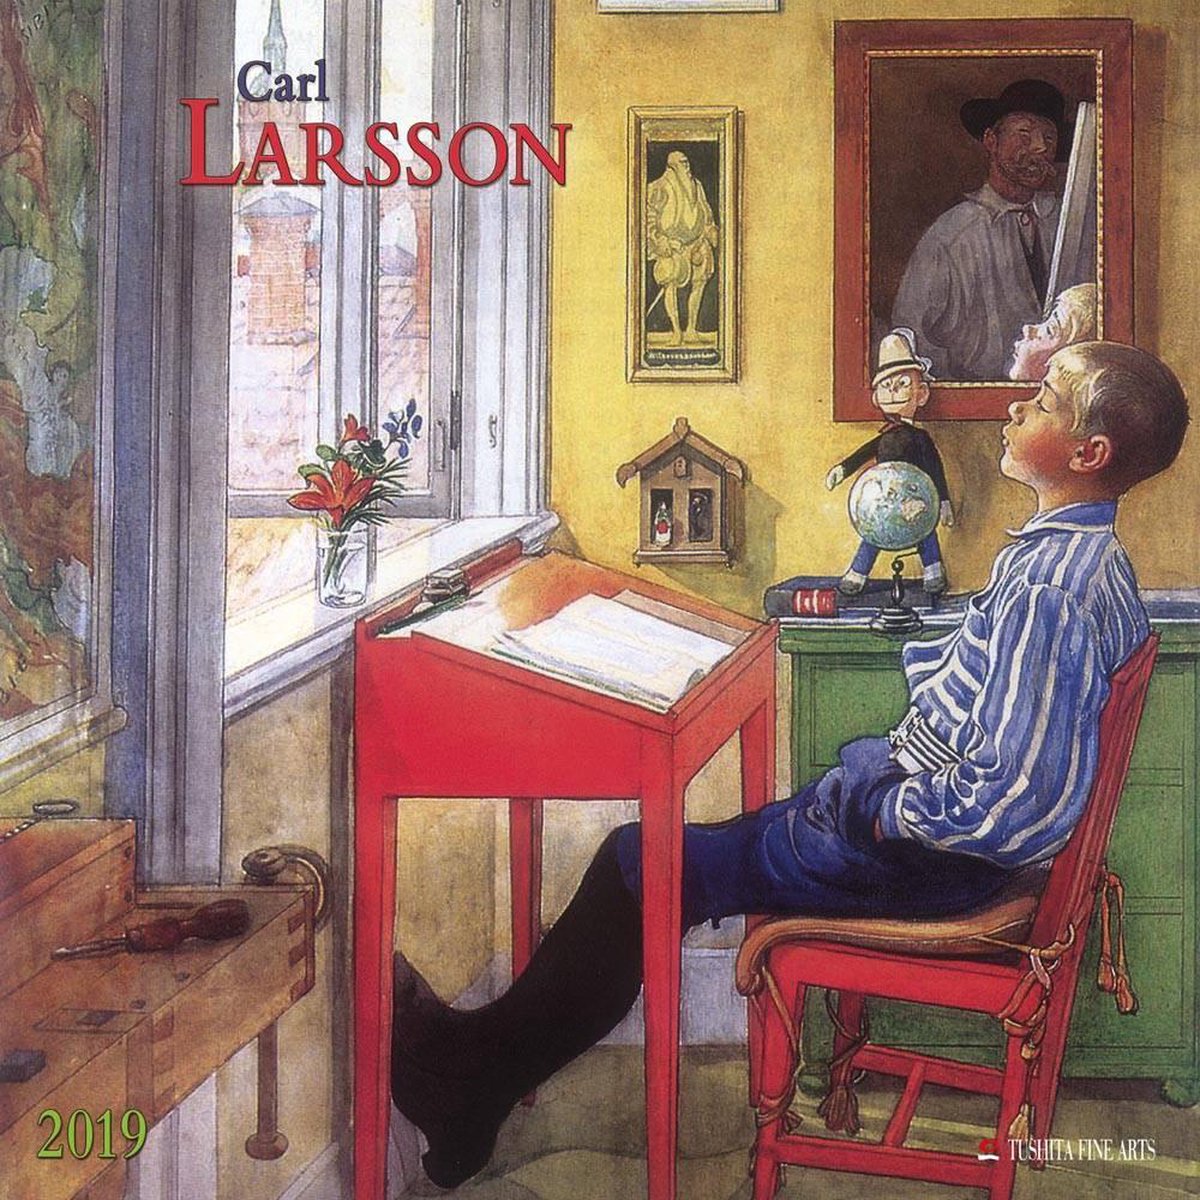 Carl Larsson 2019 - Tushita